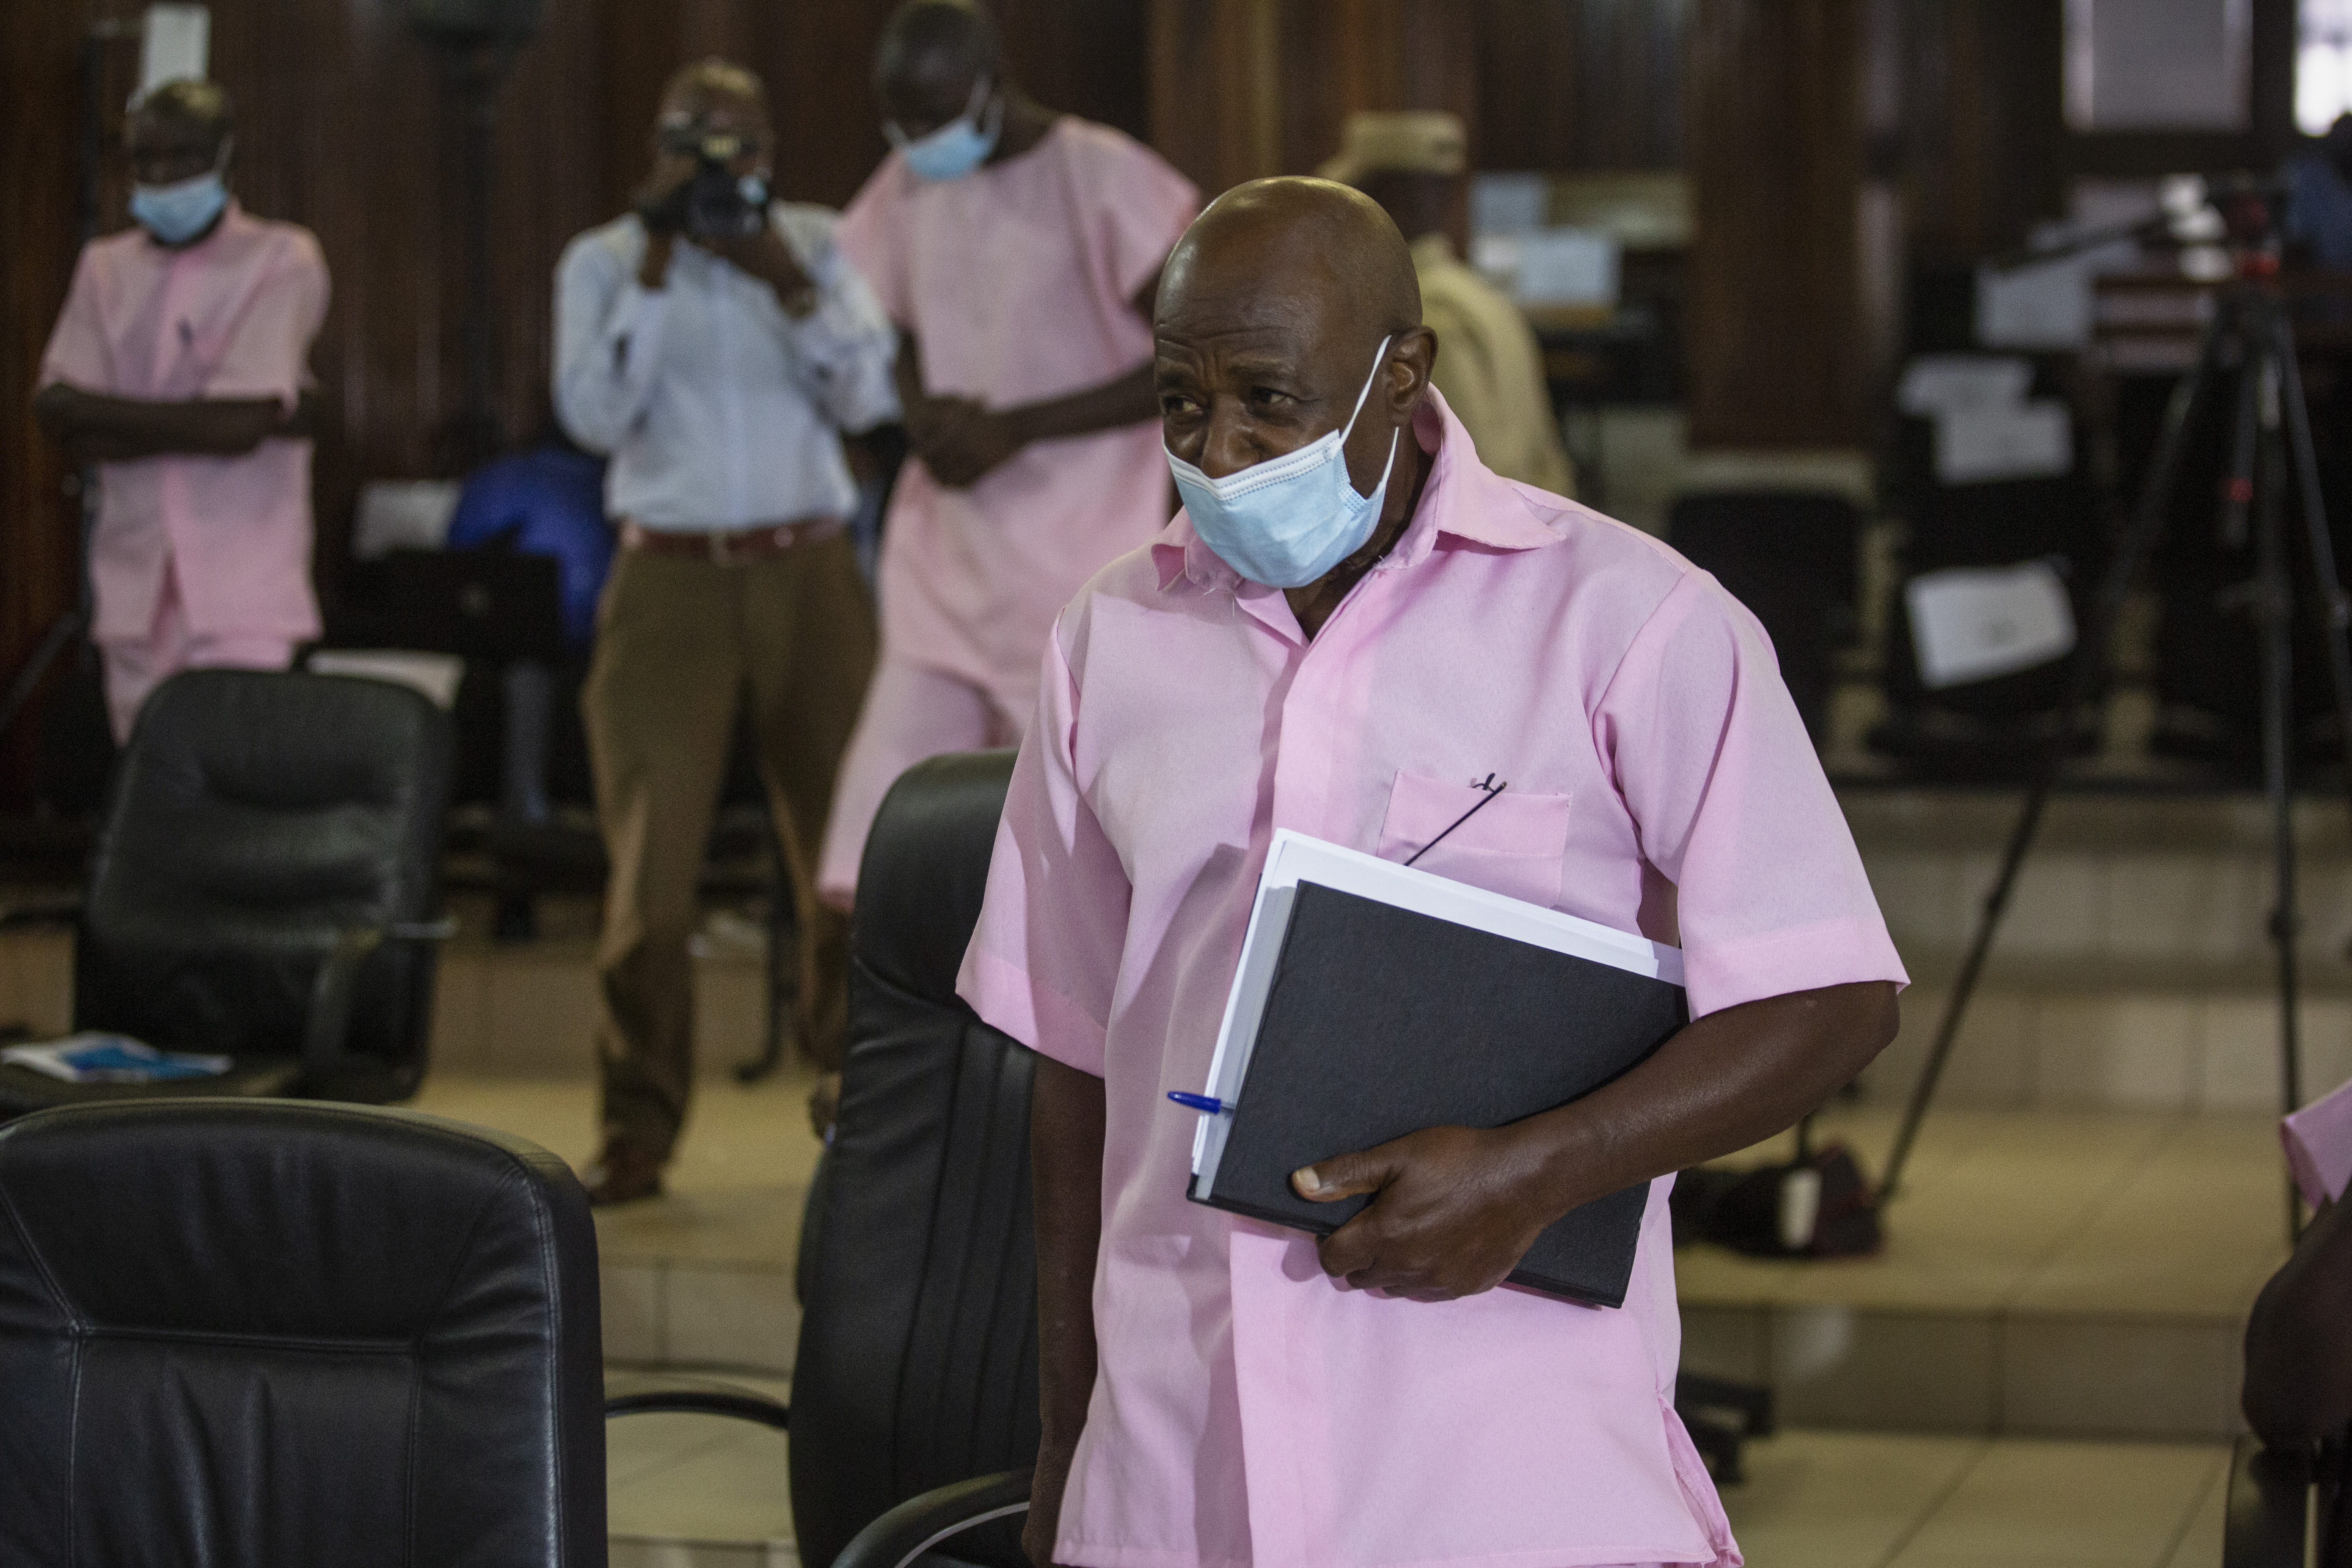 Foto de archivo: Paul Rusesabagina se presenta a una audiencia en la corte en Kigali, Ruanda, el viernes 26 de febrero de 2021 (AP/Muhizi Olivier)